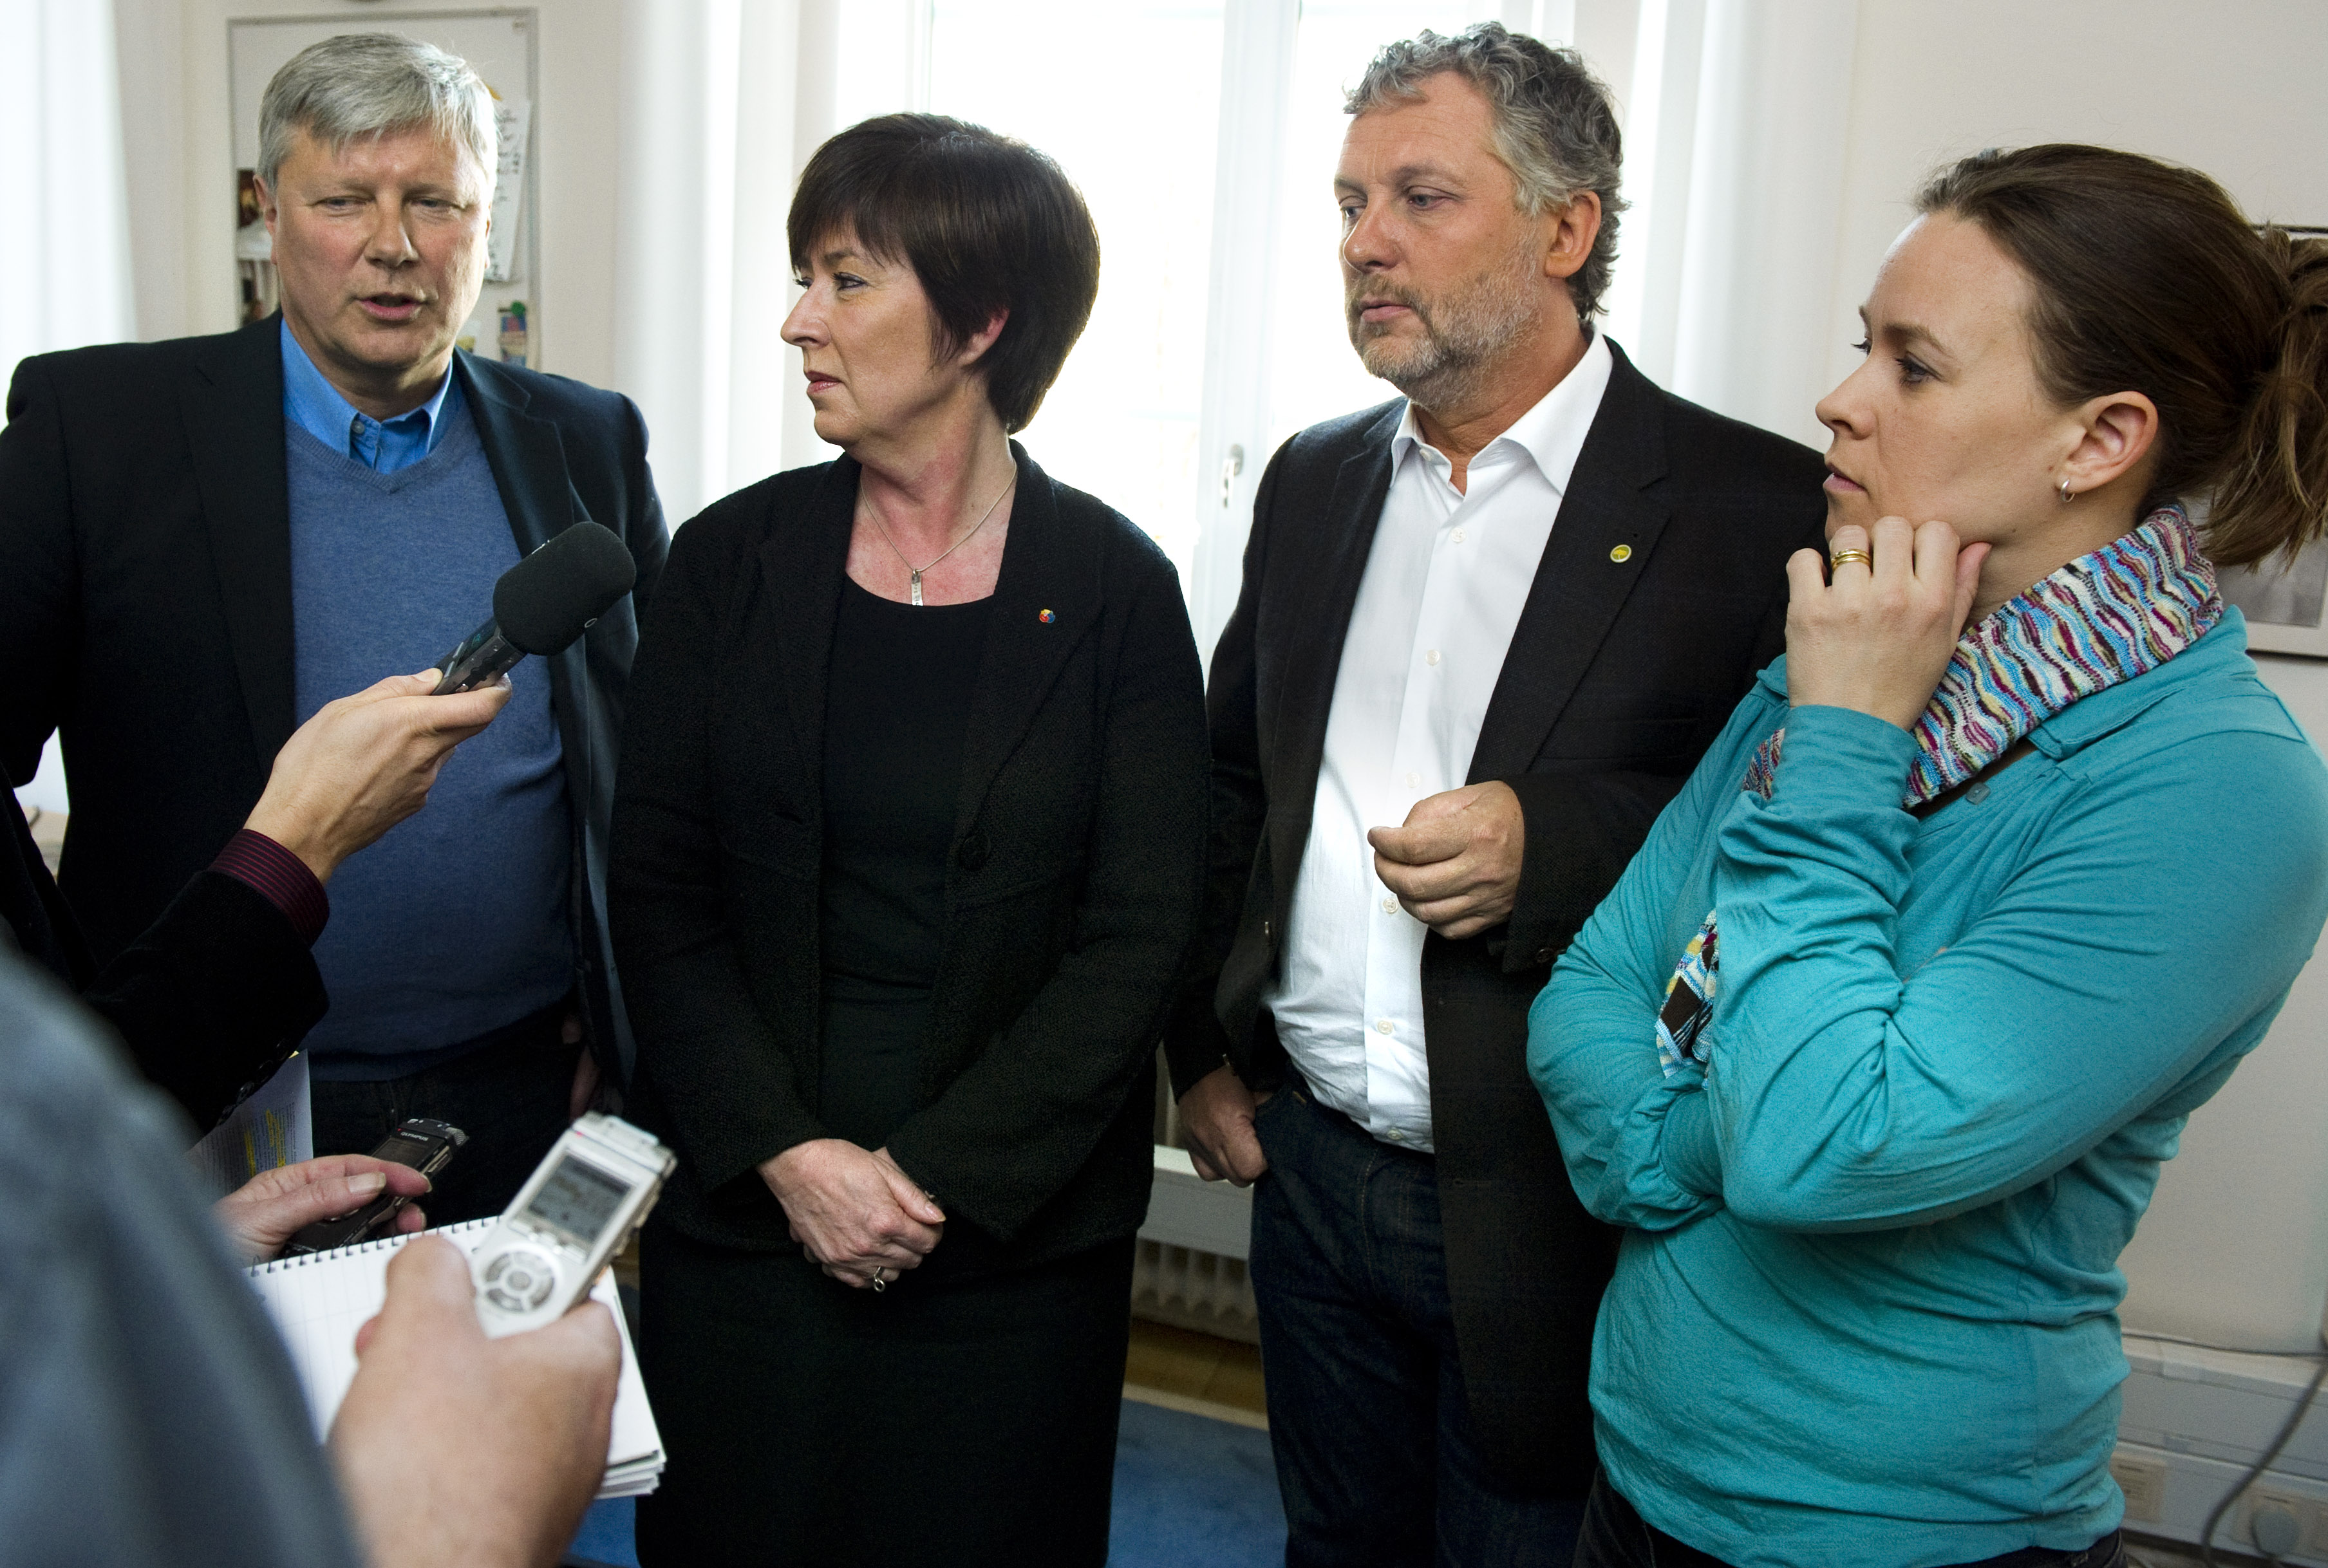 Alliansen, Riksdagsvalet 2010, Opinionsundersökning, Novus, Rödgröna regeringen